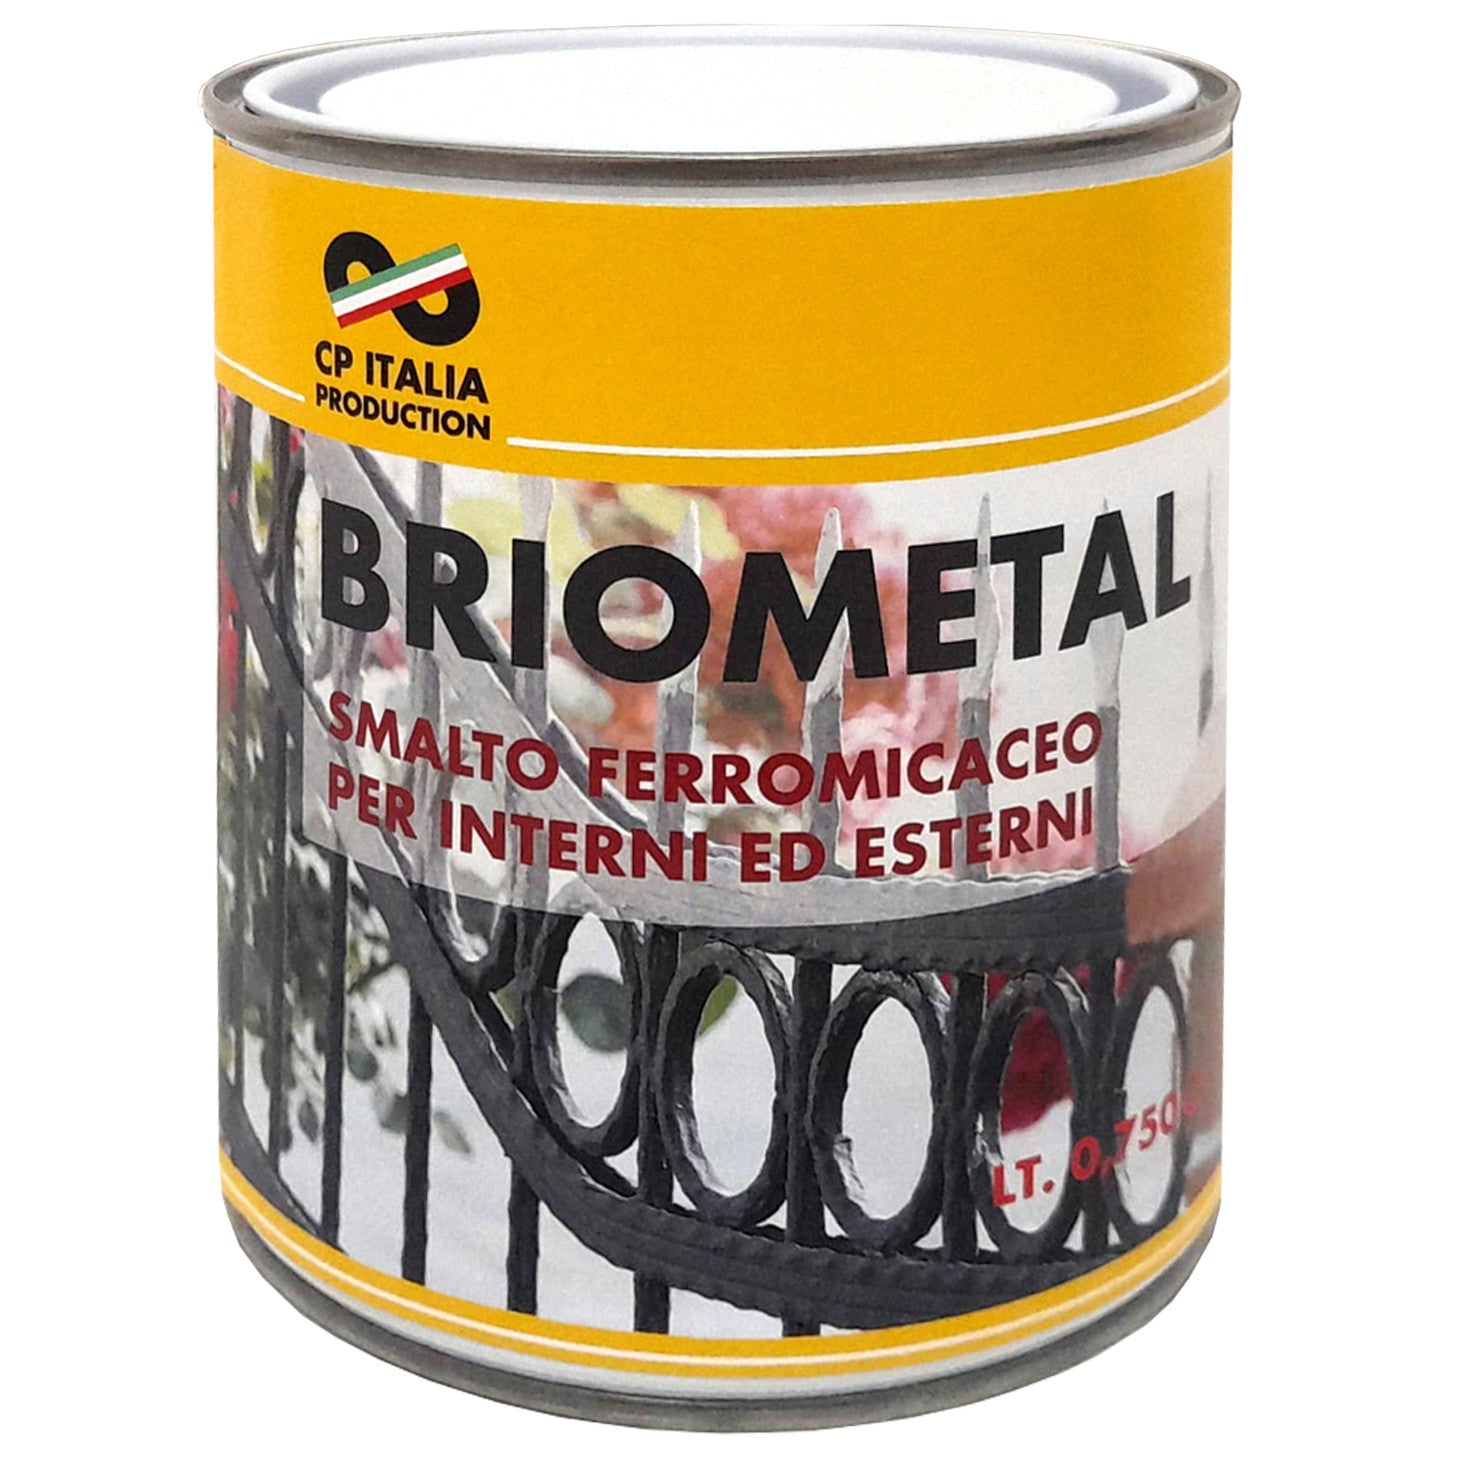 Smalto micaceo fine briometal gr. grafite 740 lt.0,750